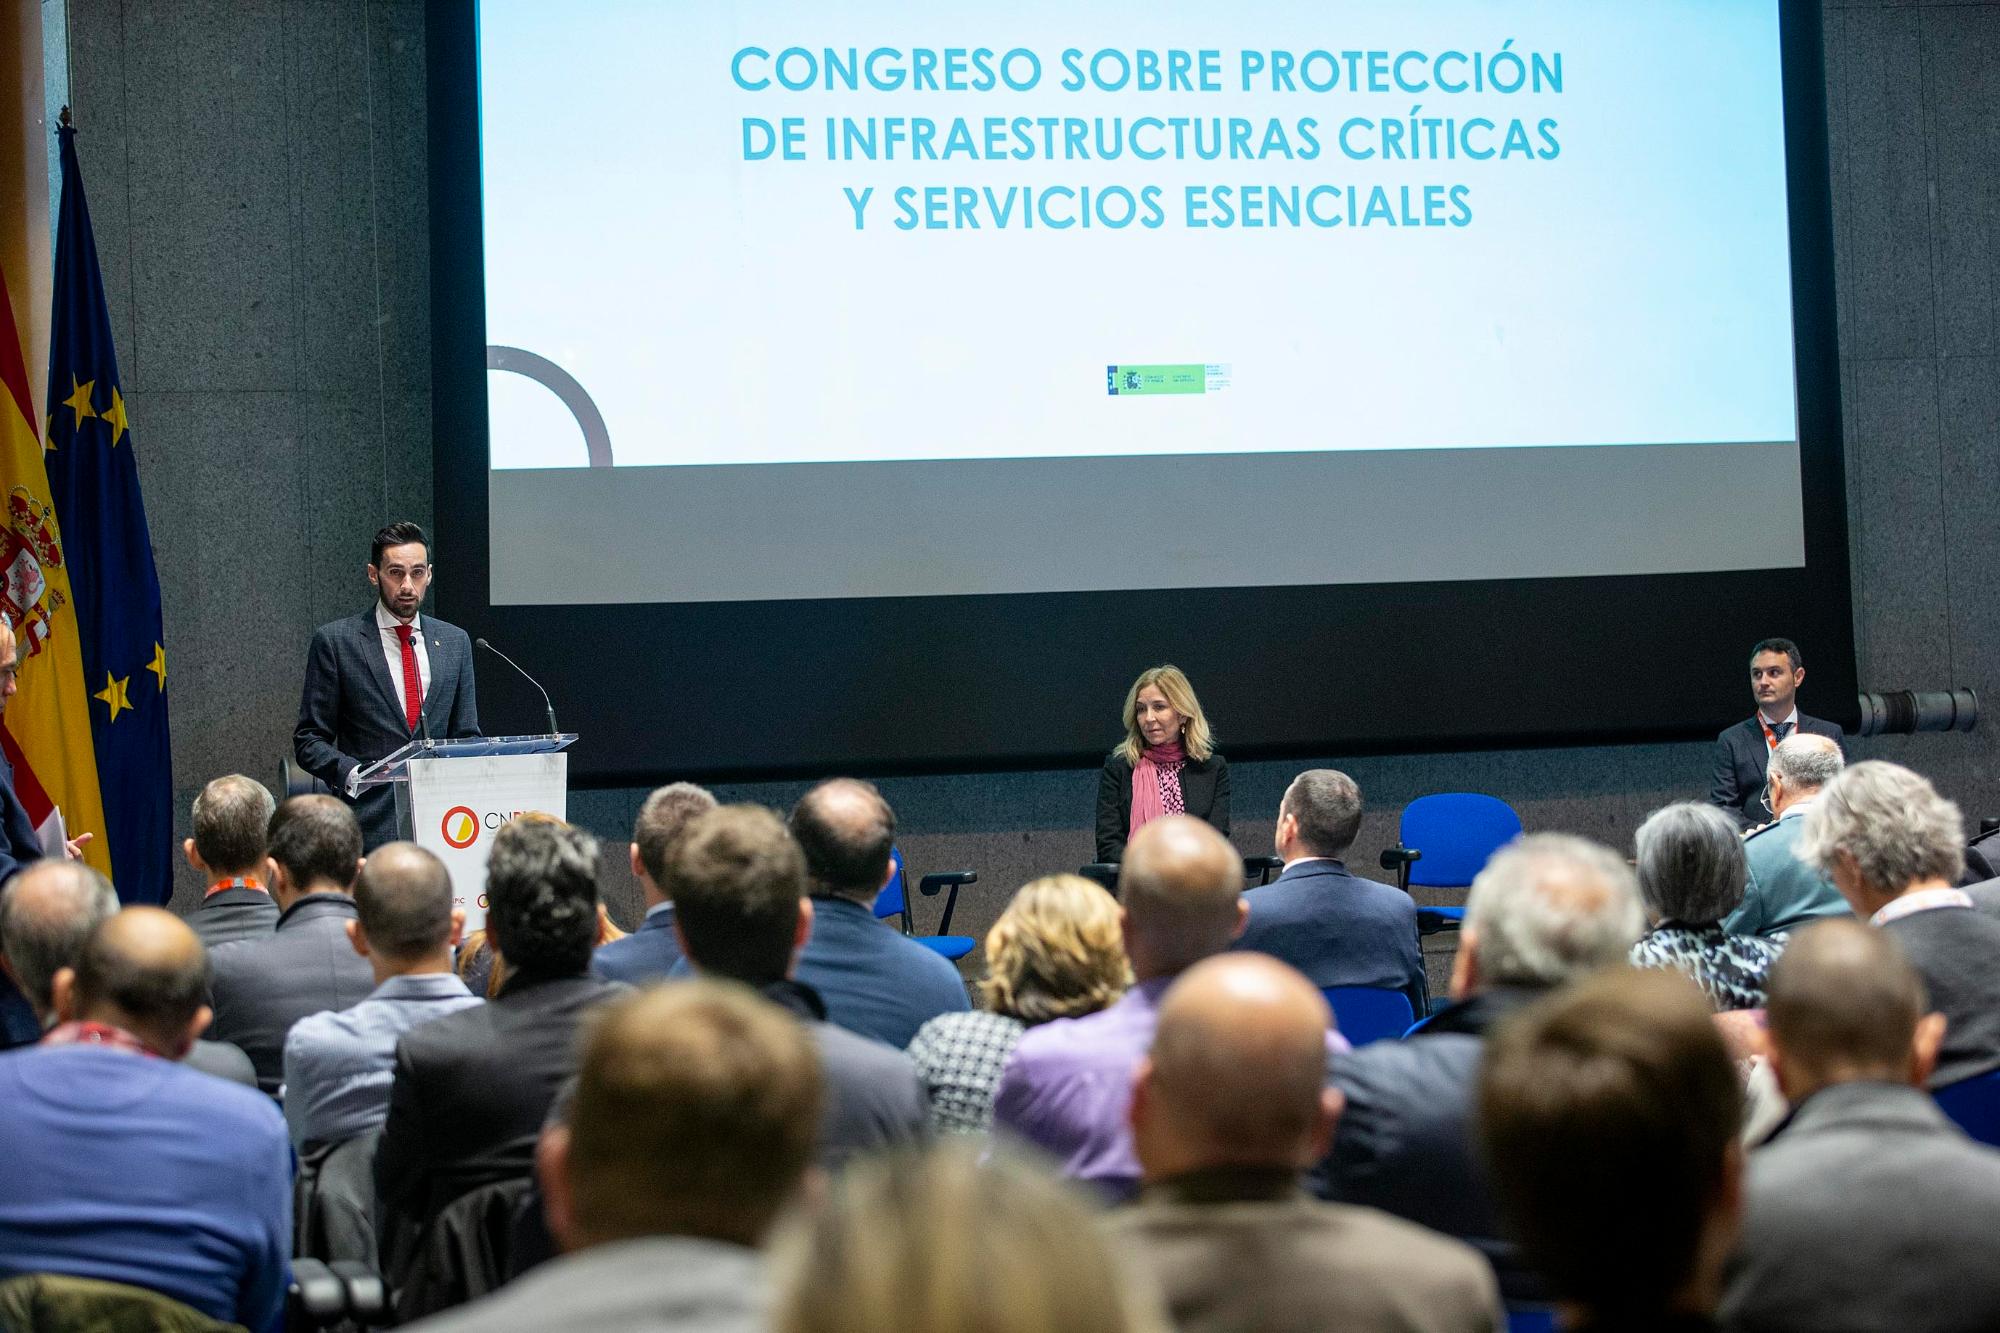 Imagen de la presentación con la intervención del Secretario de Estado para la Seguridad en la inauguración del Congreso sobre Protección de Infraestructuras Críticas y Servicios Esenciales